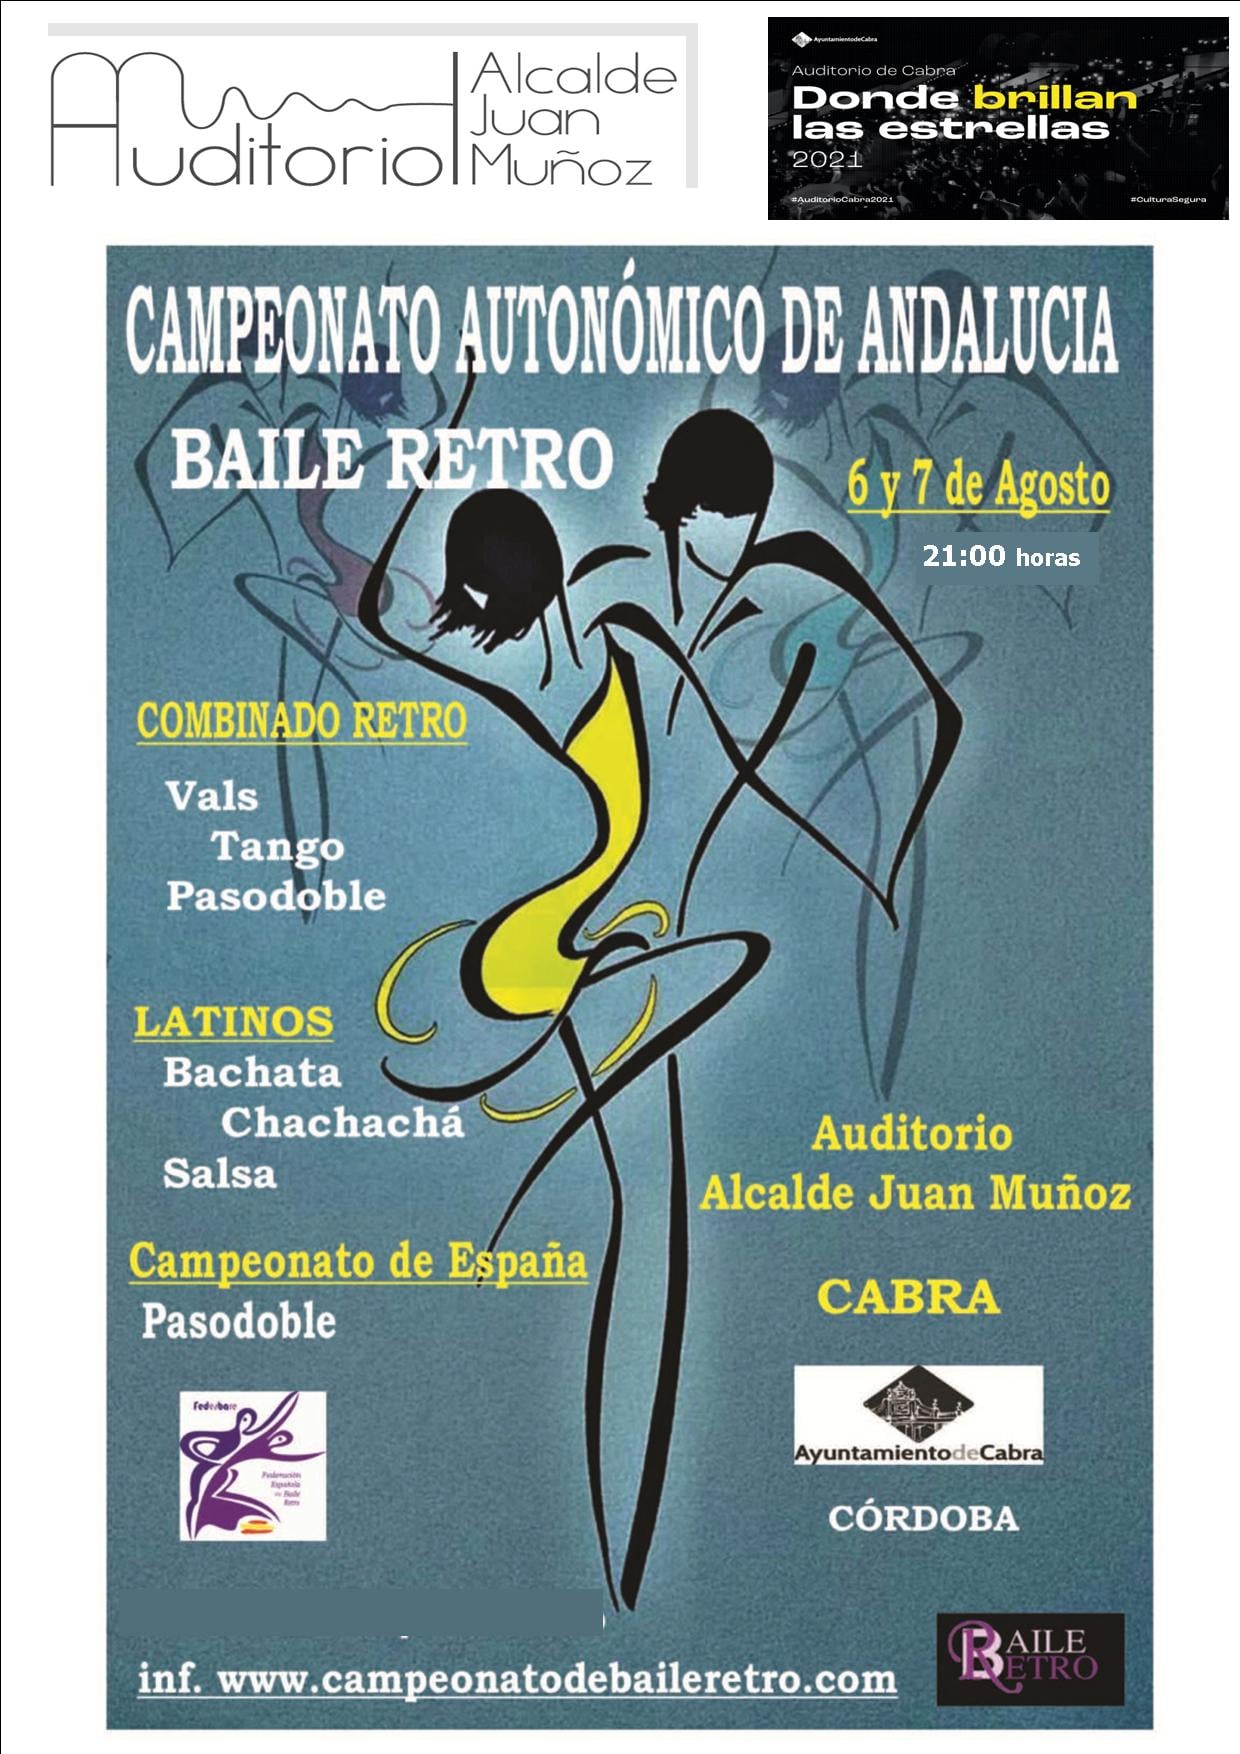 Campeonato autonómico de Andalucía del Baile Retro. Cabra agosto de 2021